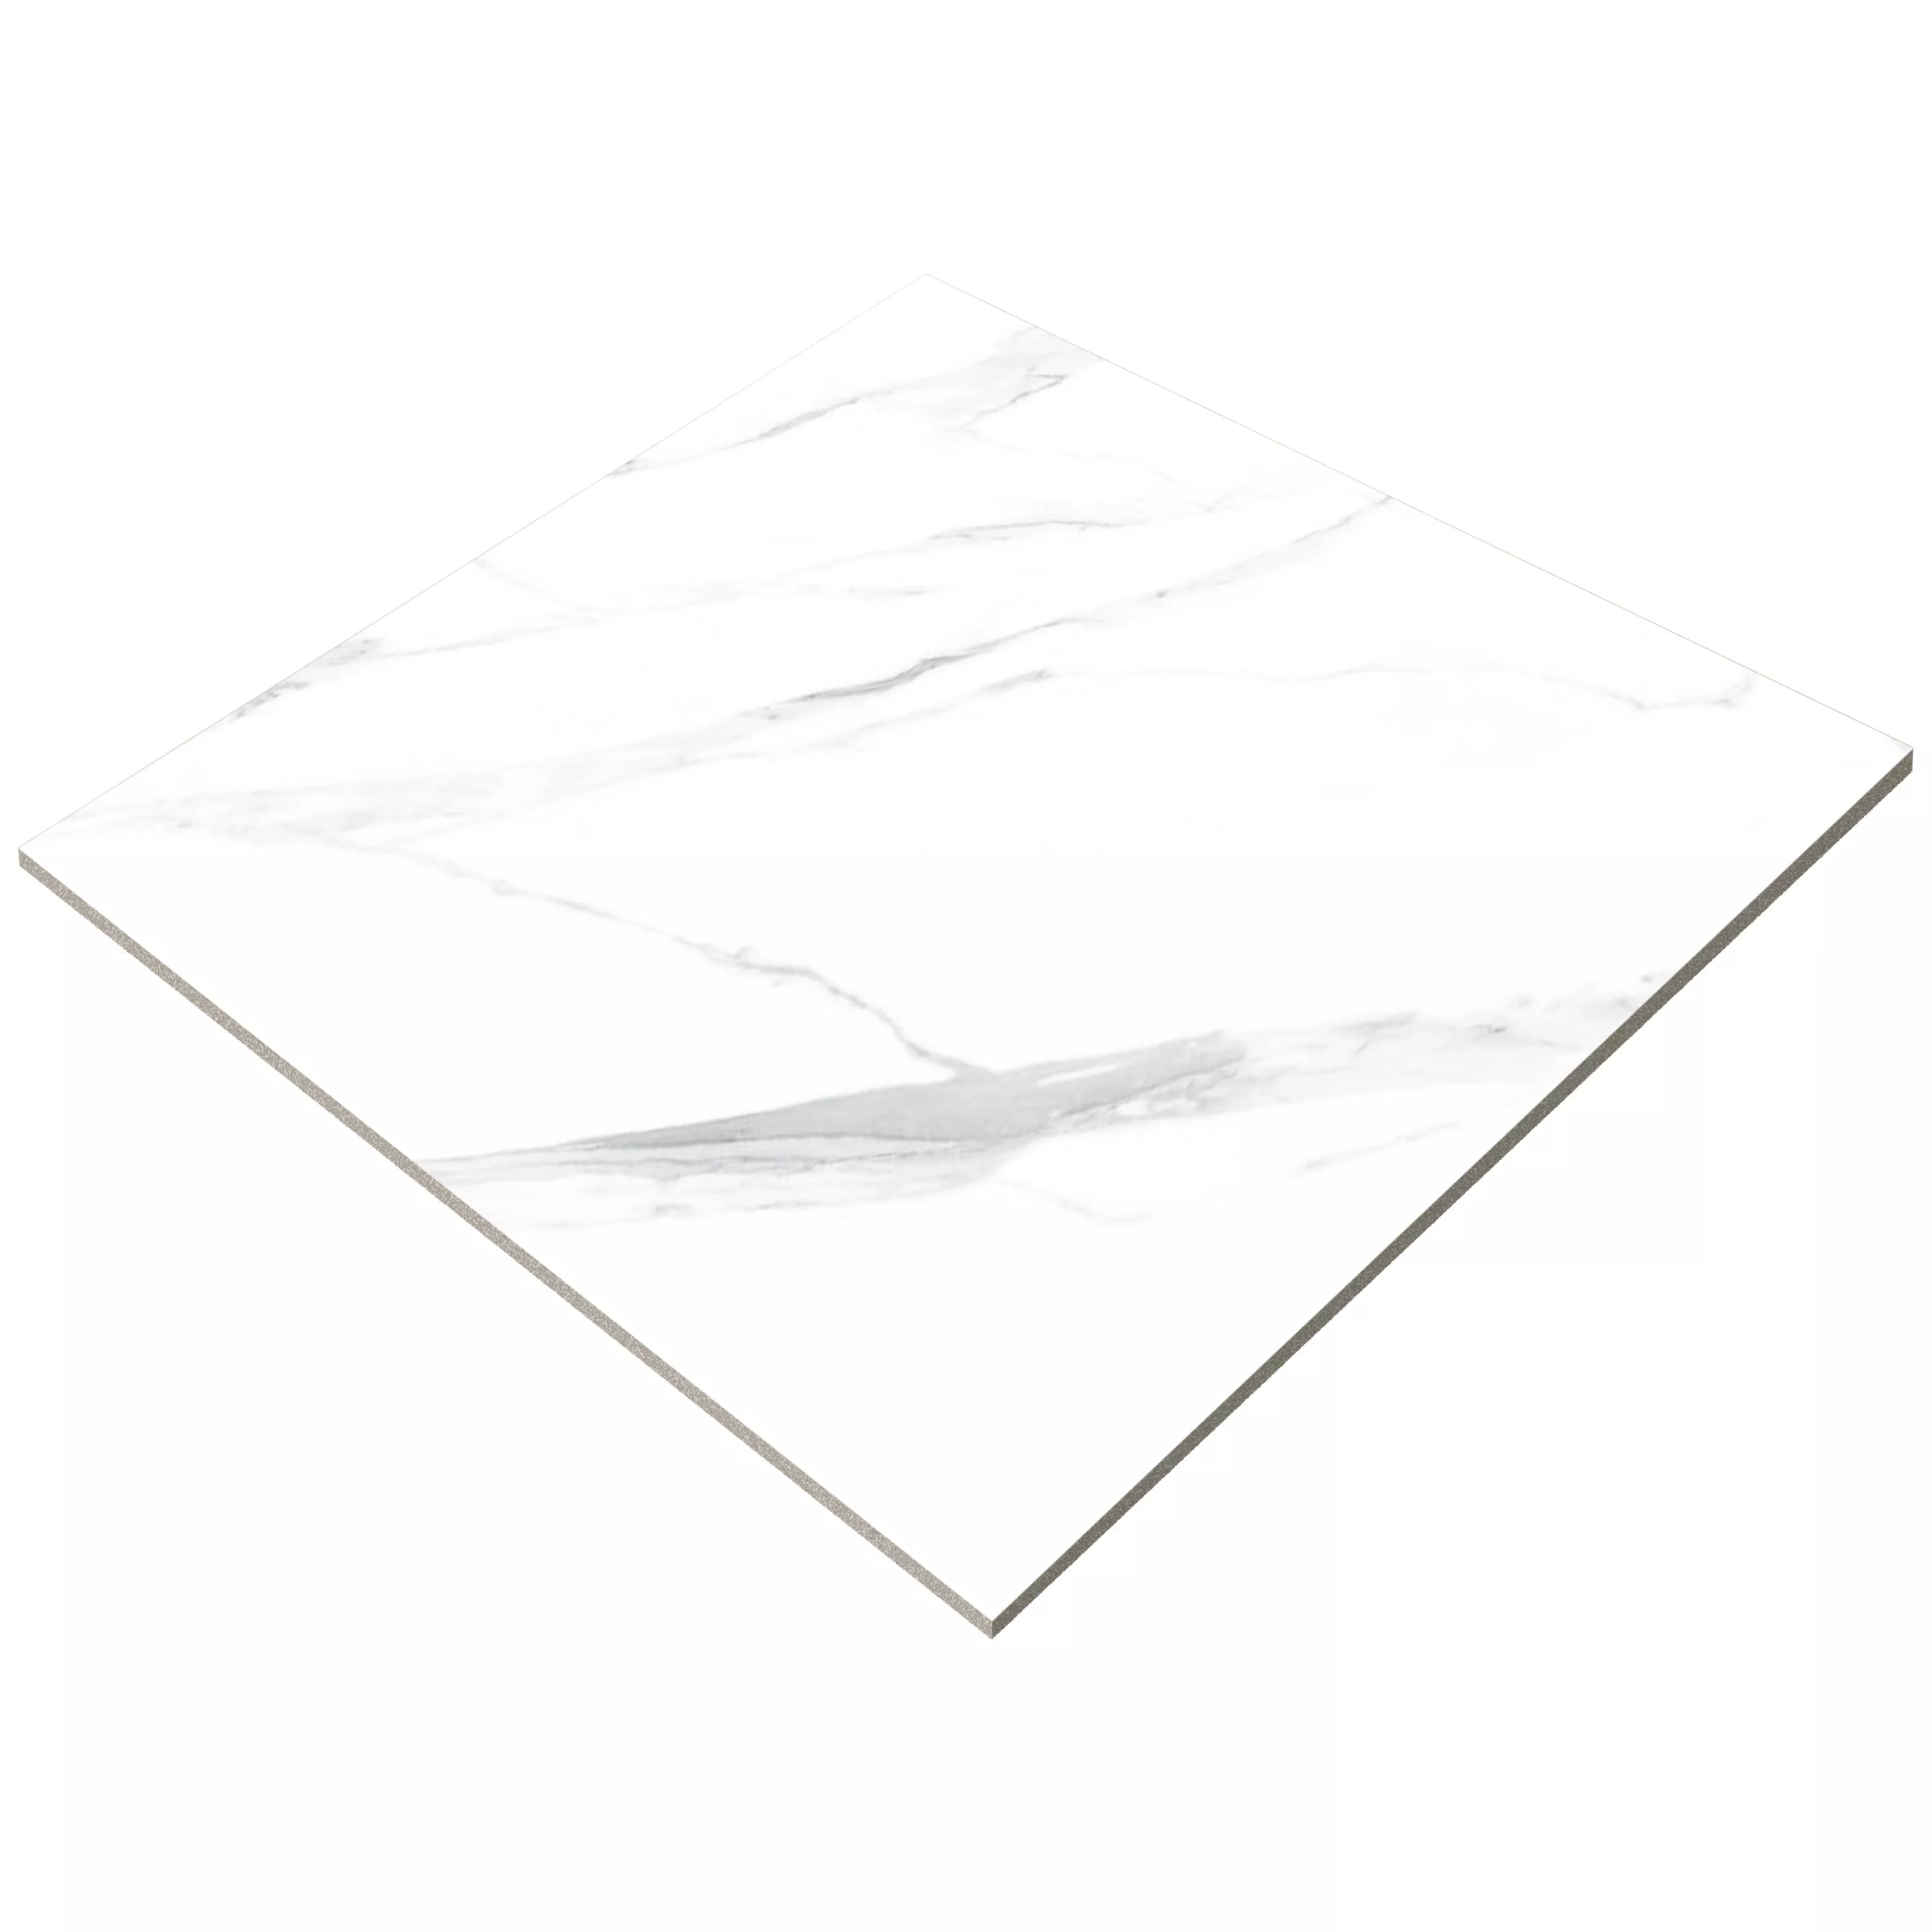 Πλακάκια Δαπέδου Serenity Μαρμάρινη Όψη Αμεμπτος Ασπρο 60x60cm